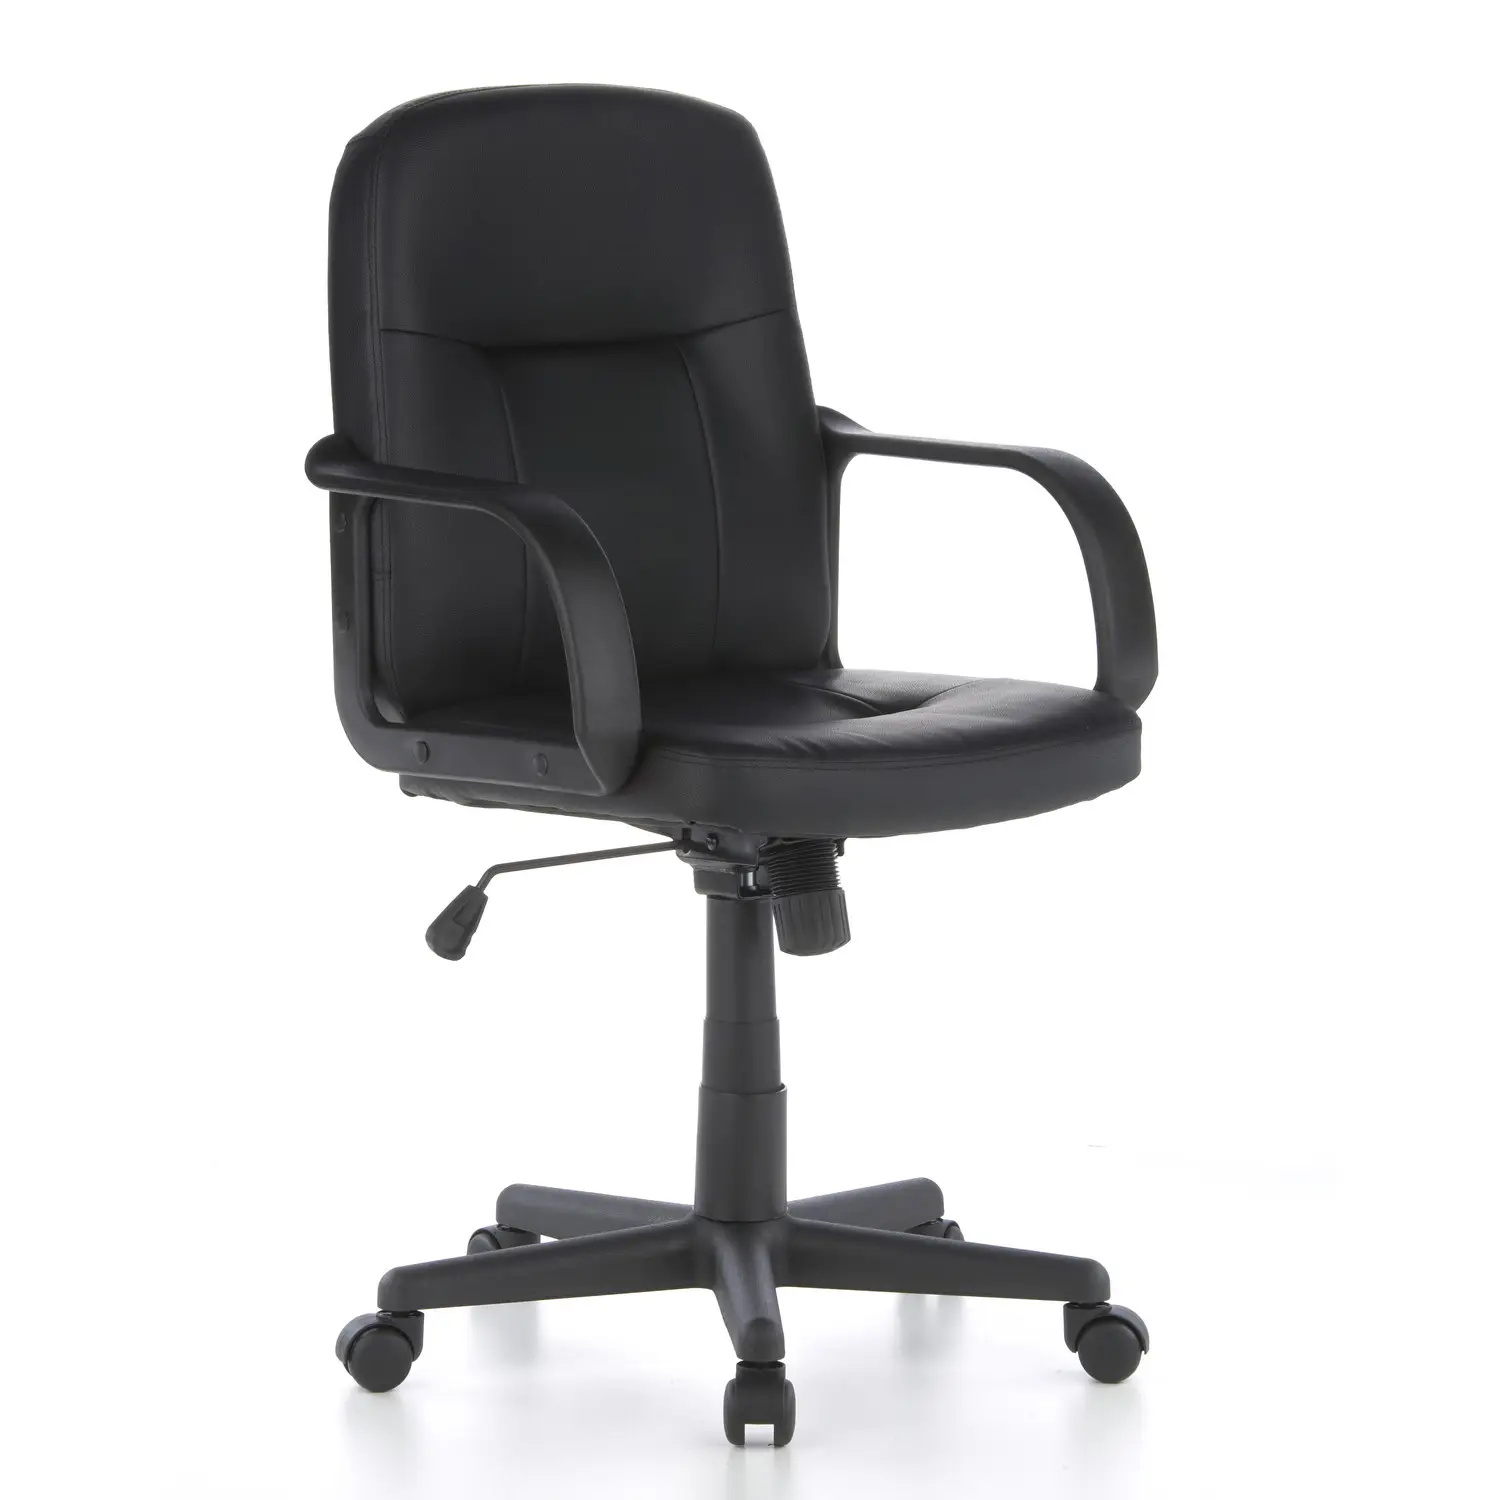 Cadeira de escritório giratória ajustável em couro PU com melhor preço Cadeira de escritório ergonômica para funcionários.